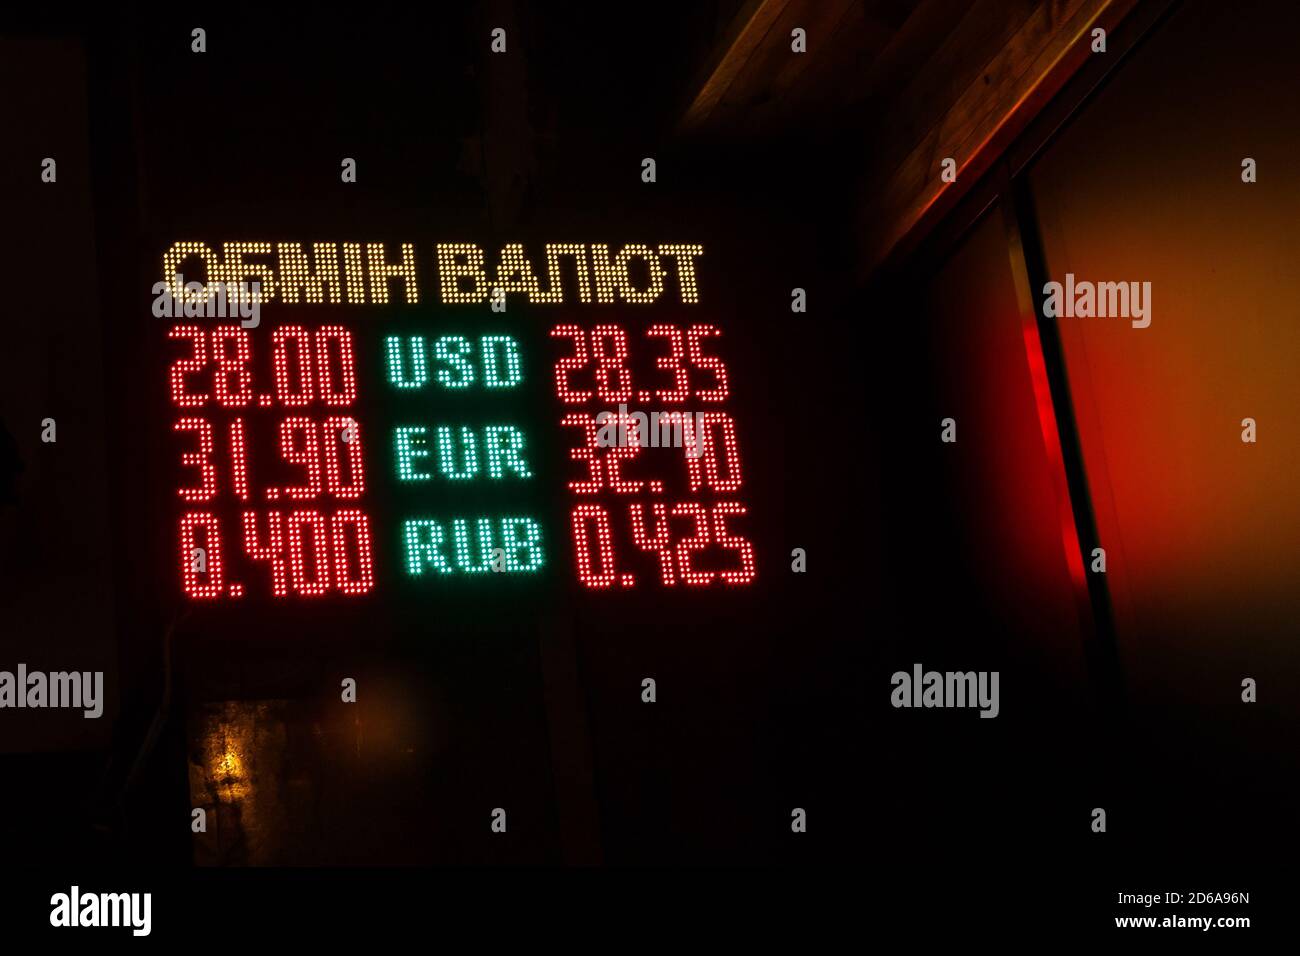 Currency exchange rate display. Digital led display board. Dollar